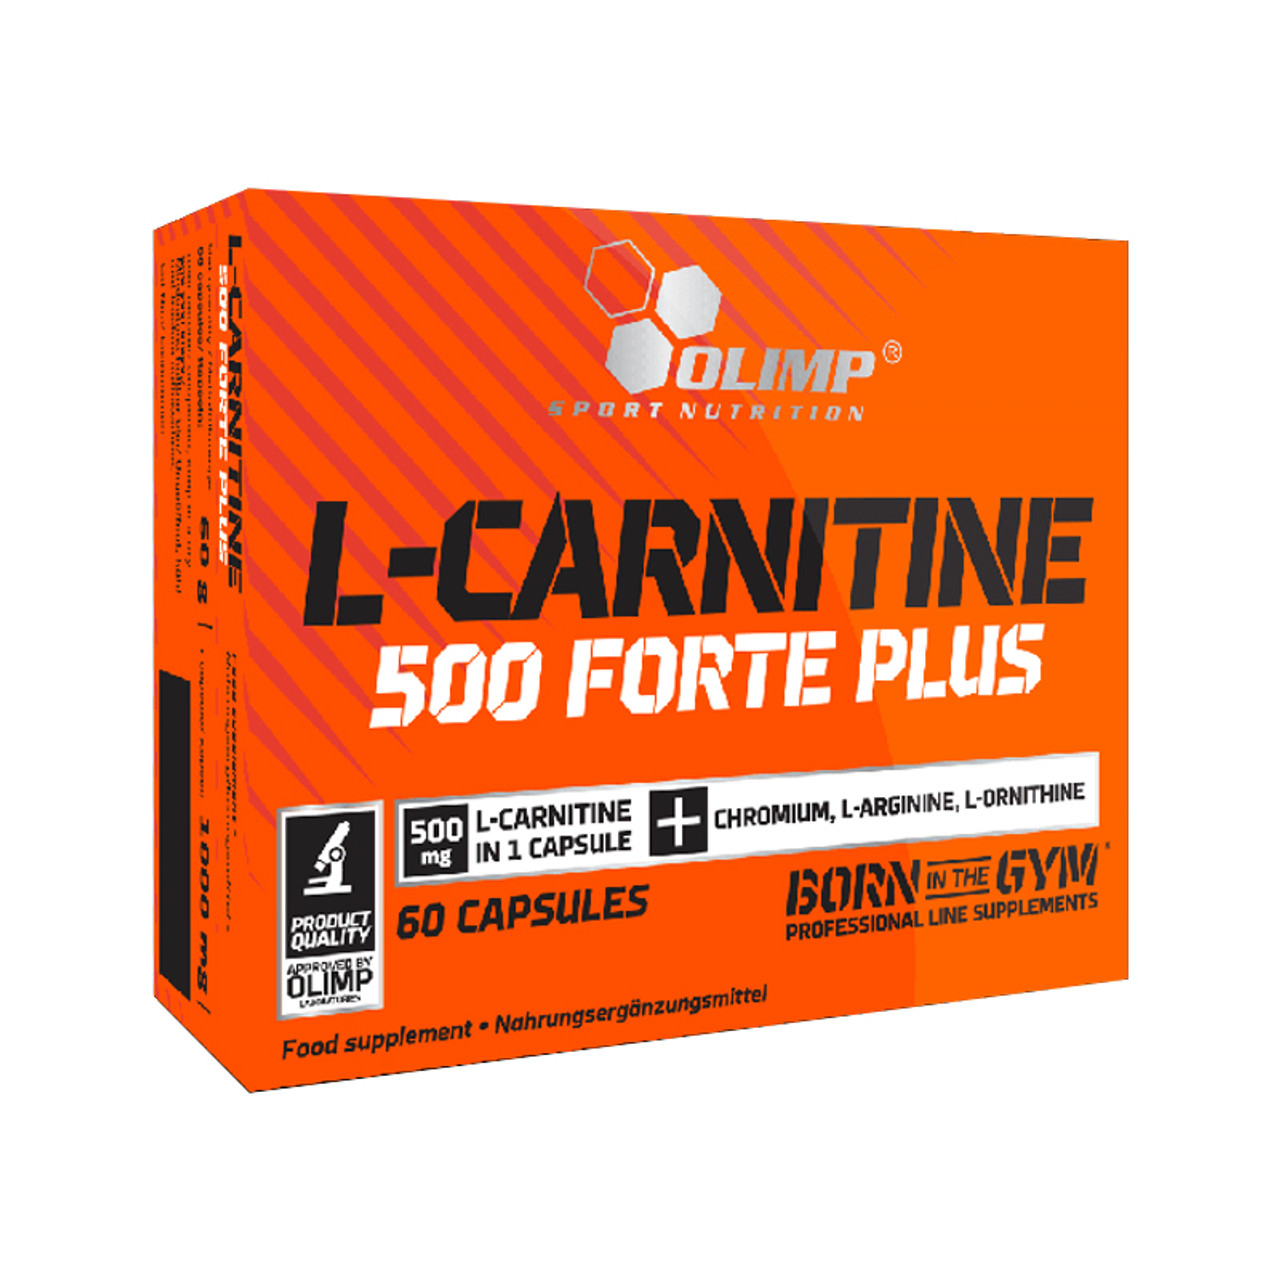 Olimp - L-CARNITINE 500 FORTE PLUS - 60 CAPS